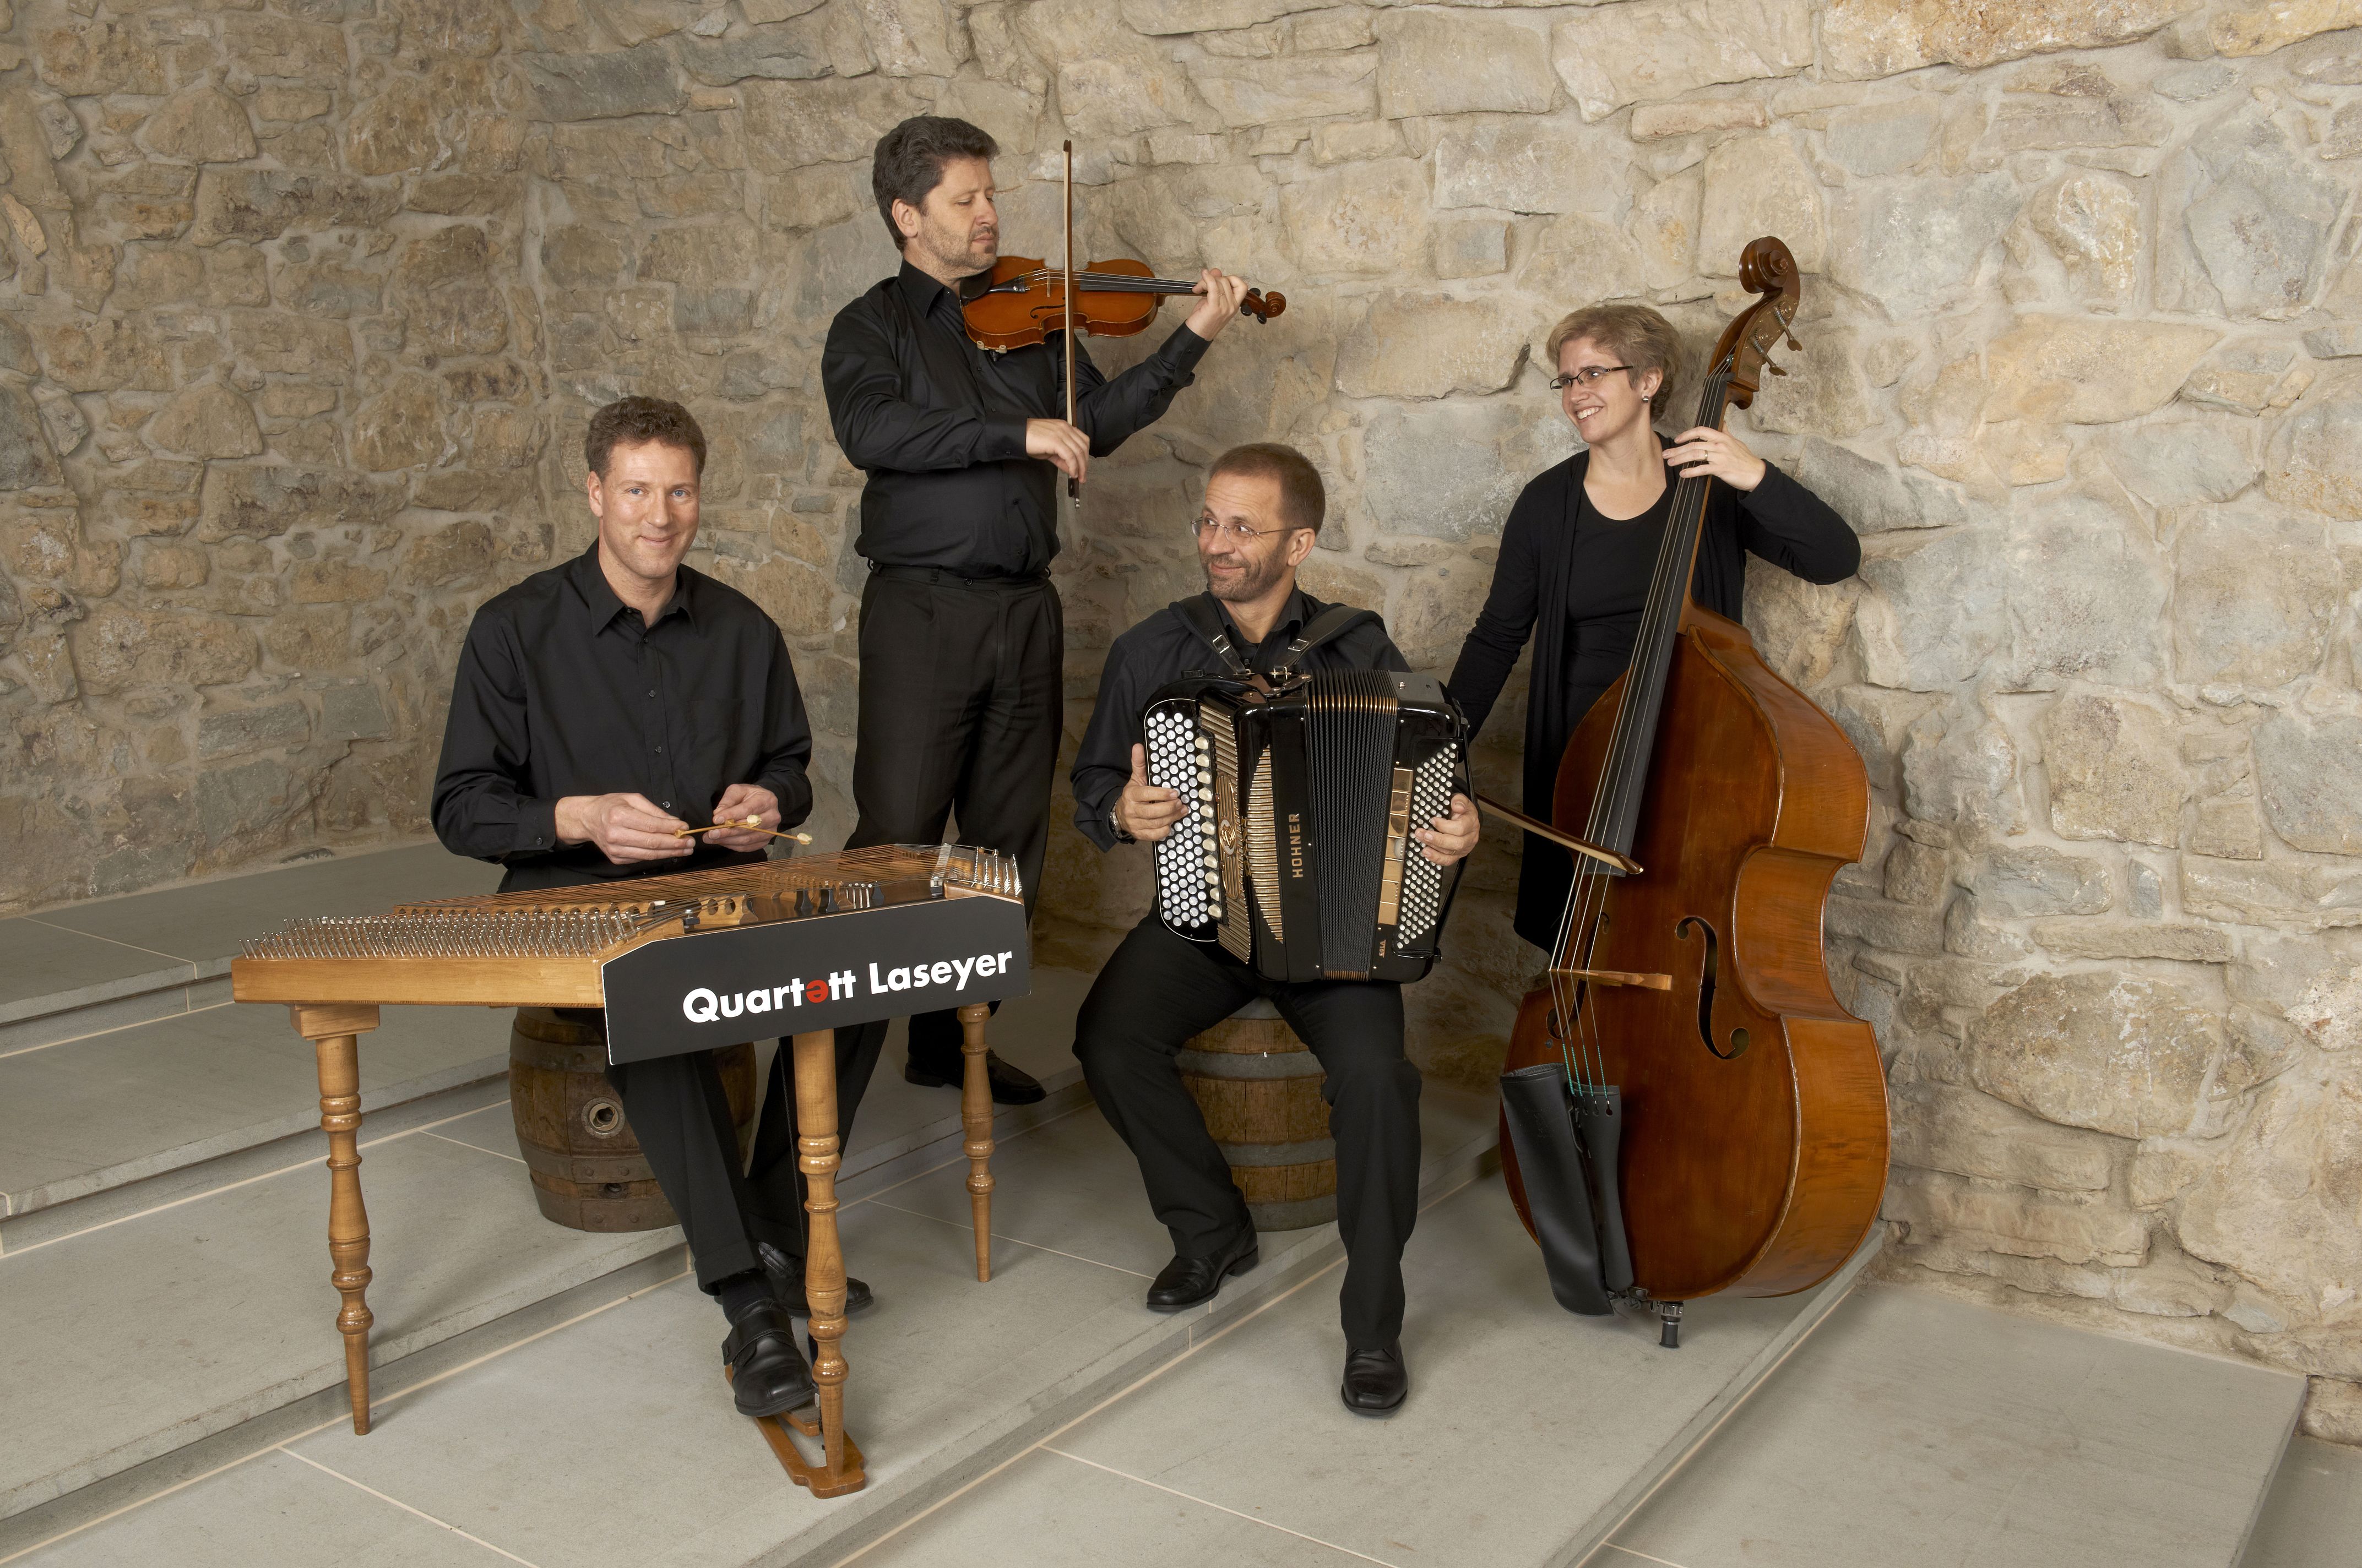 Quartett Laseyer Schwarzer Anzug mit Instrumenten am Spielen